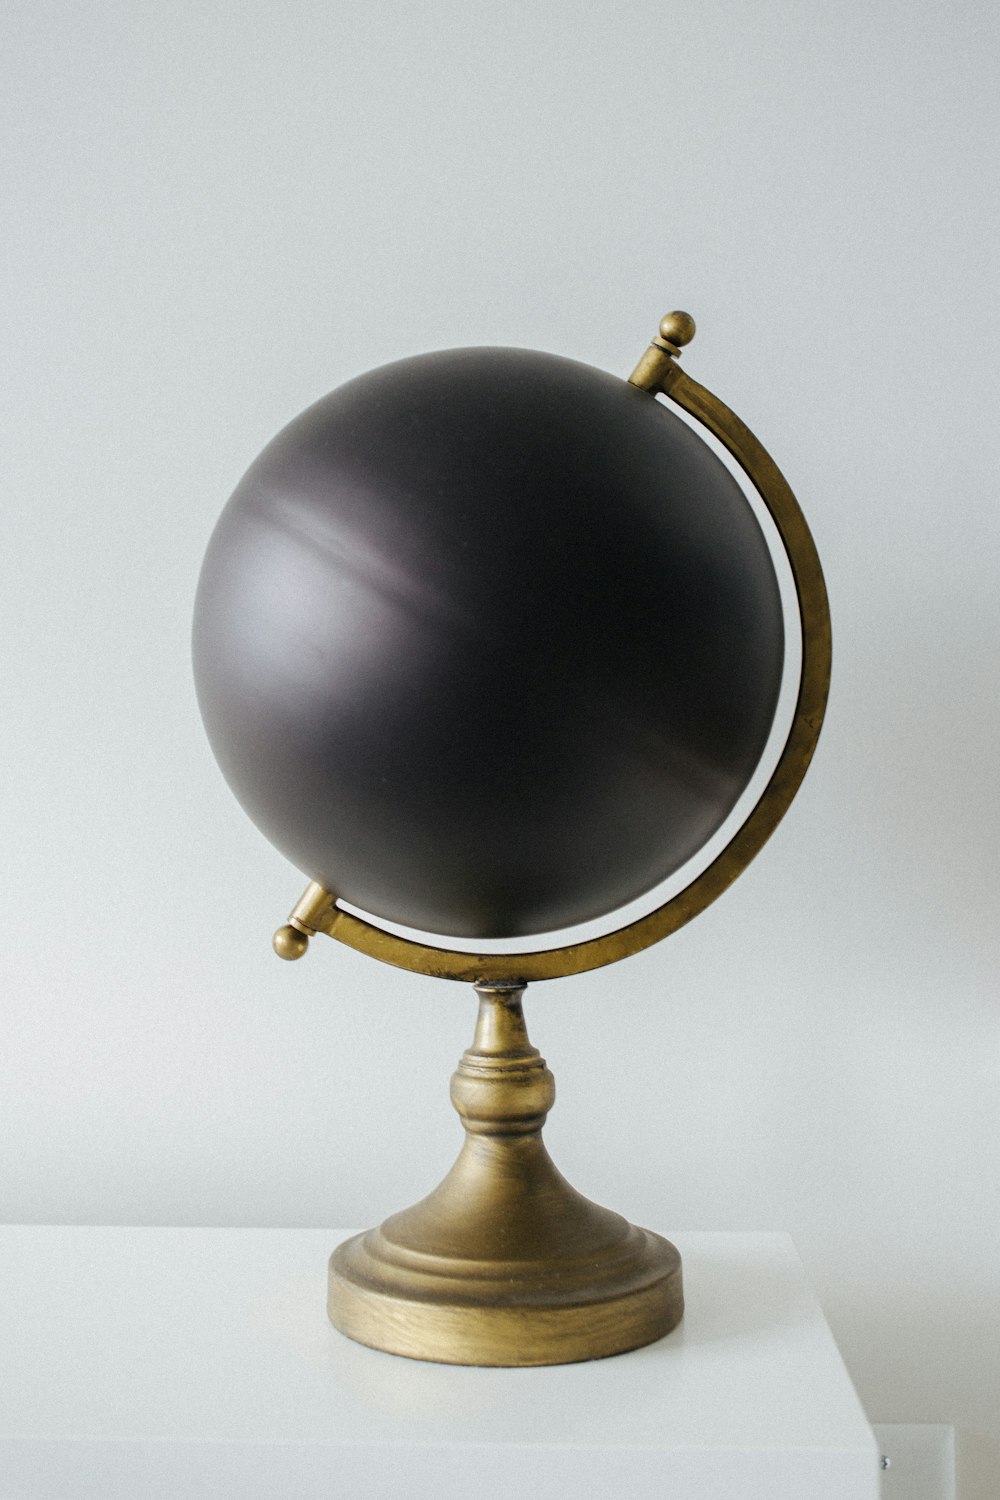 Un globo negro sentado encima de una mesa blanca